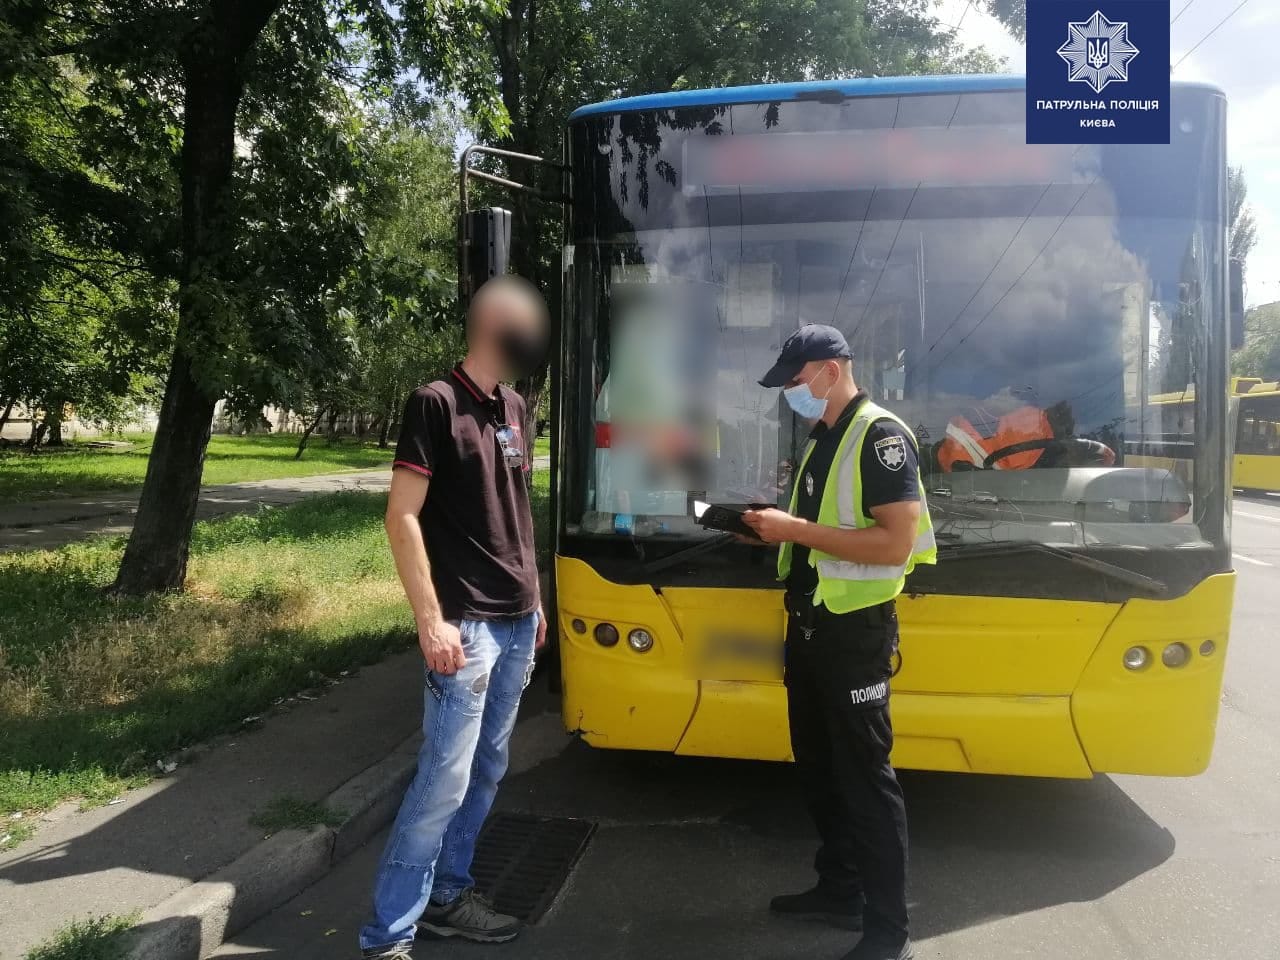 На проспекте Победы в Киеве полицейские остановили троллейбус, водитель которого был в состоянии наркотического опьянения